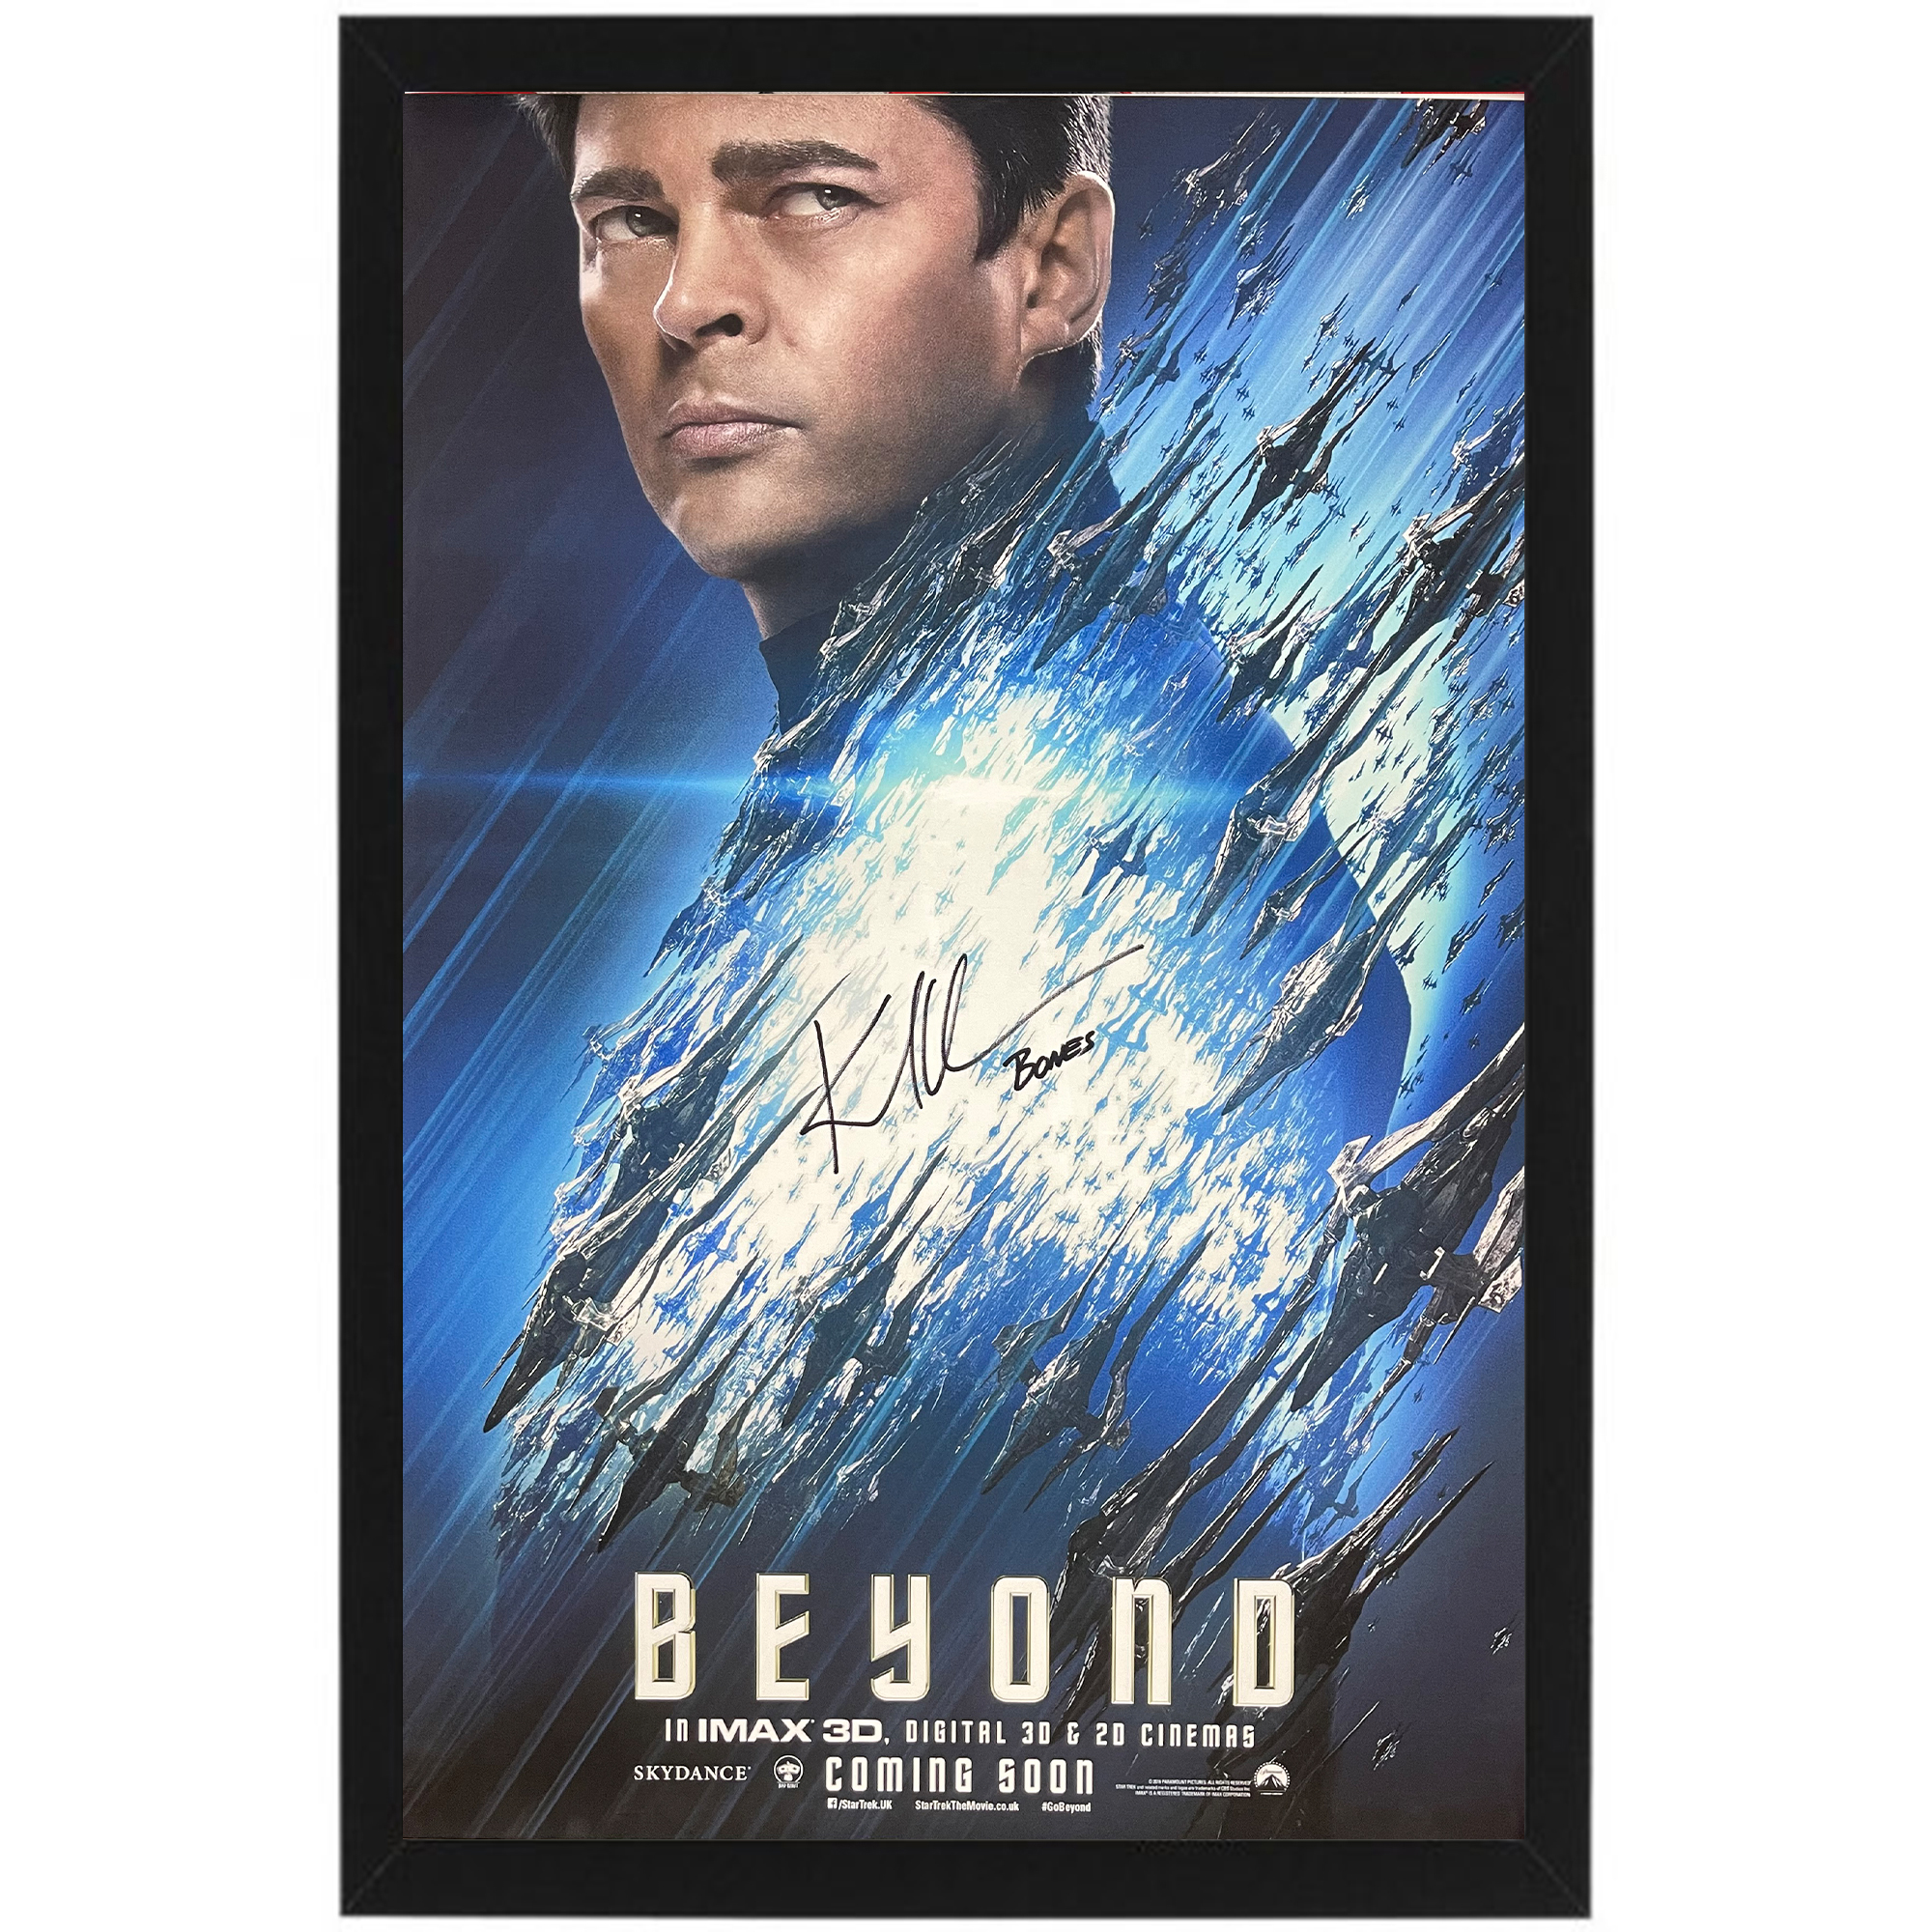 Karl Urban – “Star Trek Beyond” Signed & Framed...